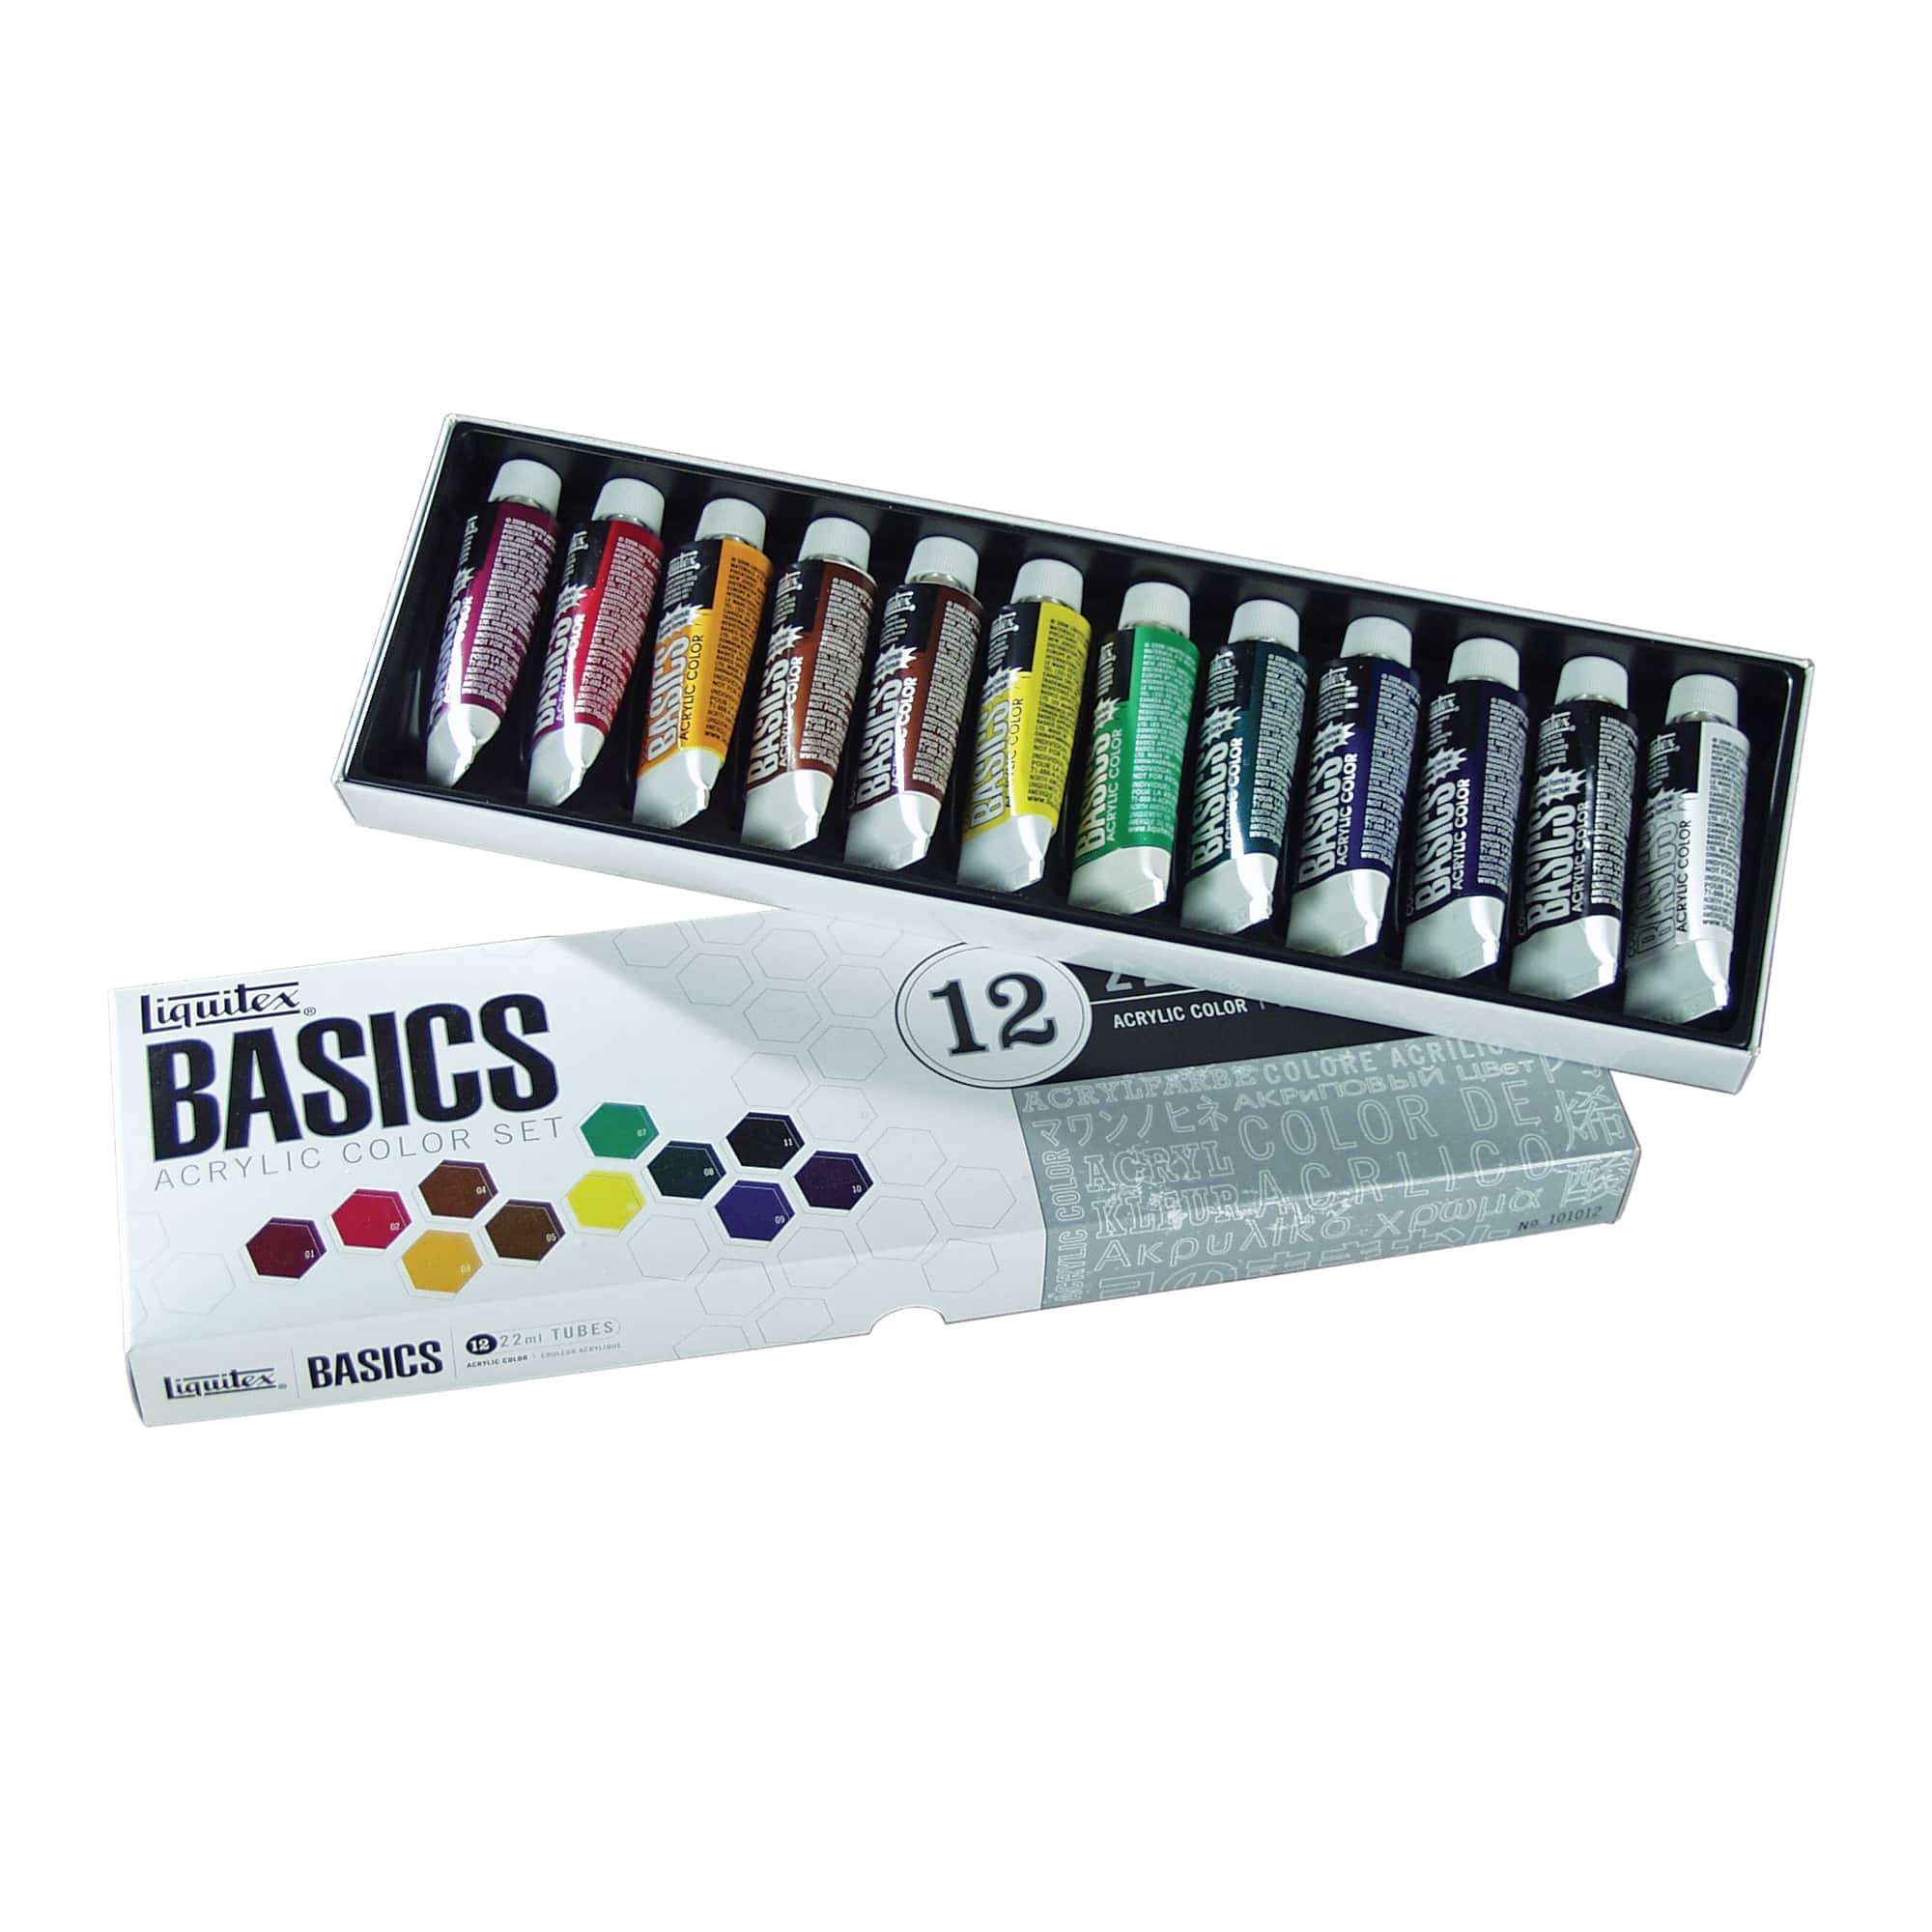 Liquitex® BASICS Acrylic Color Set, 12 Count